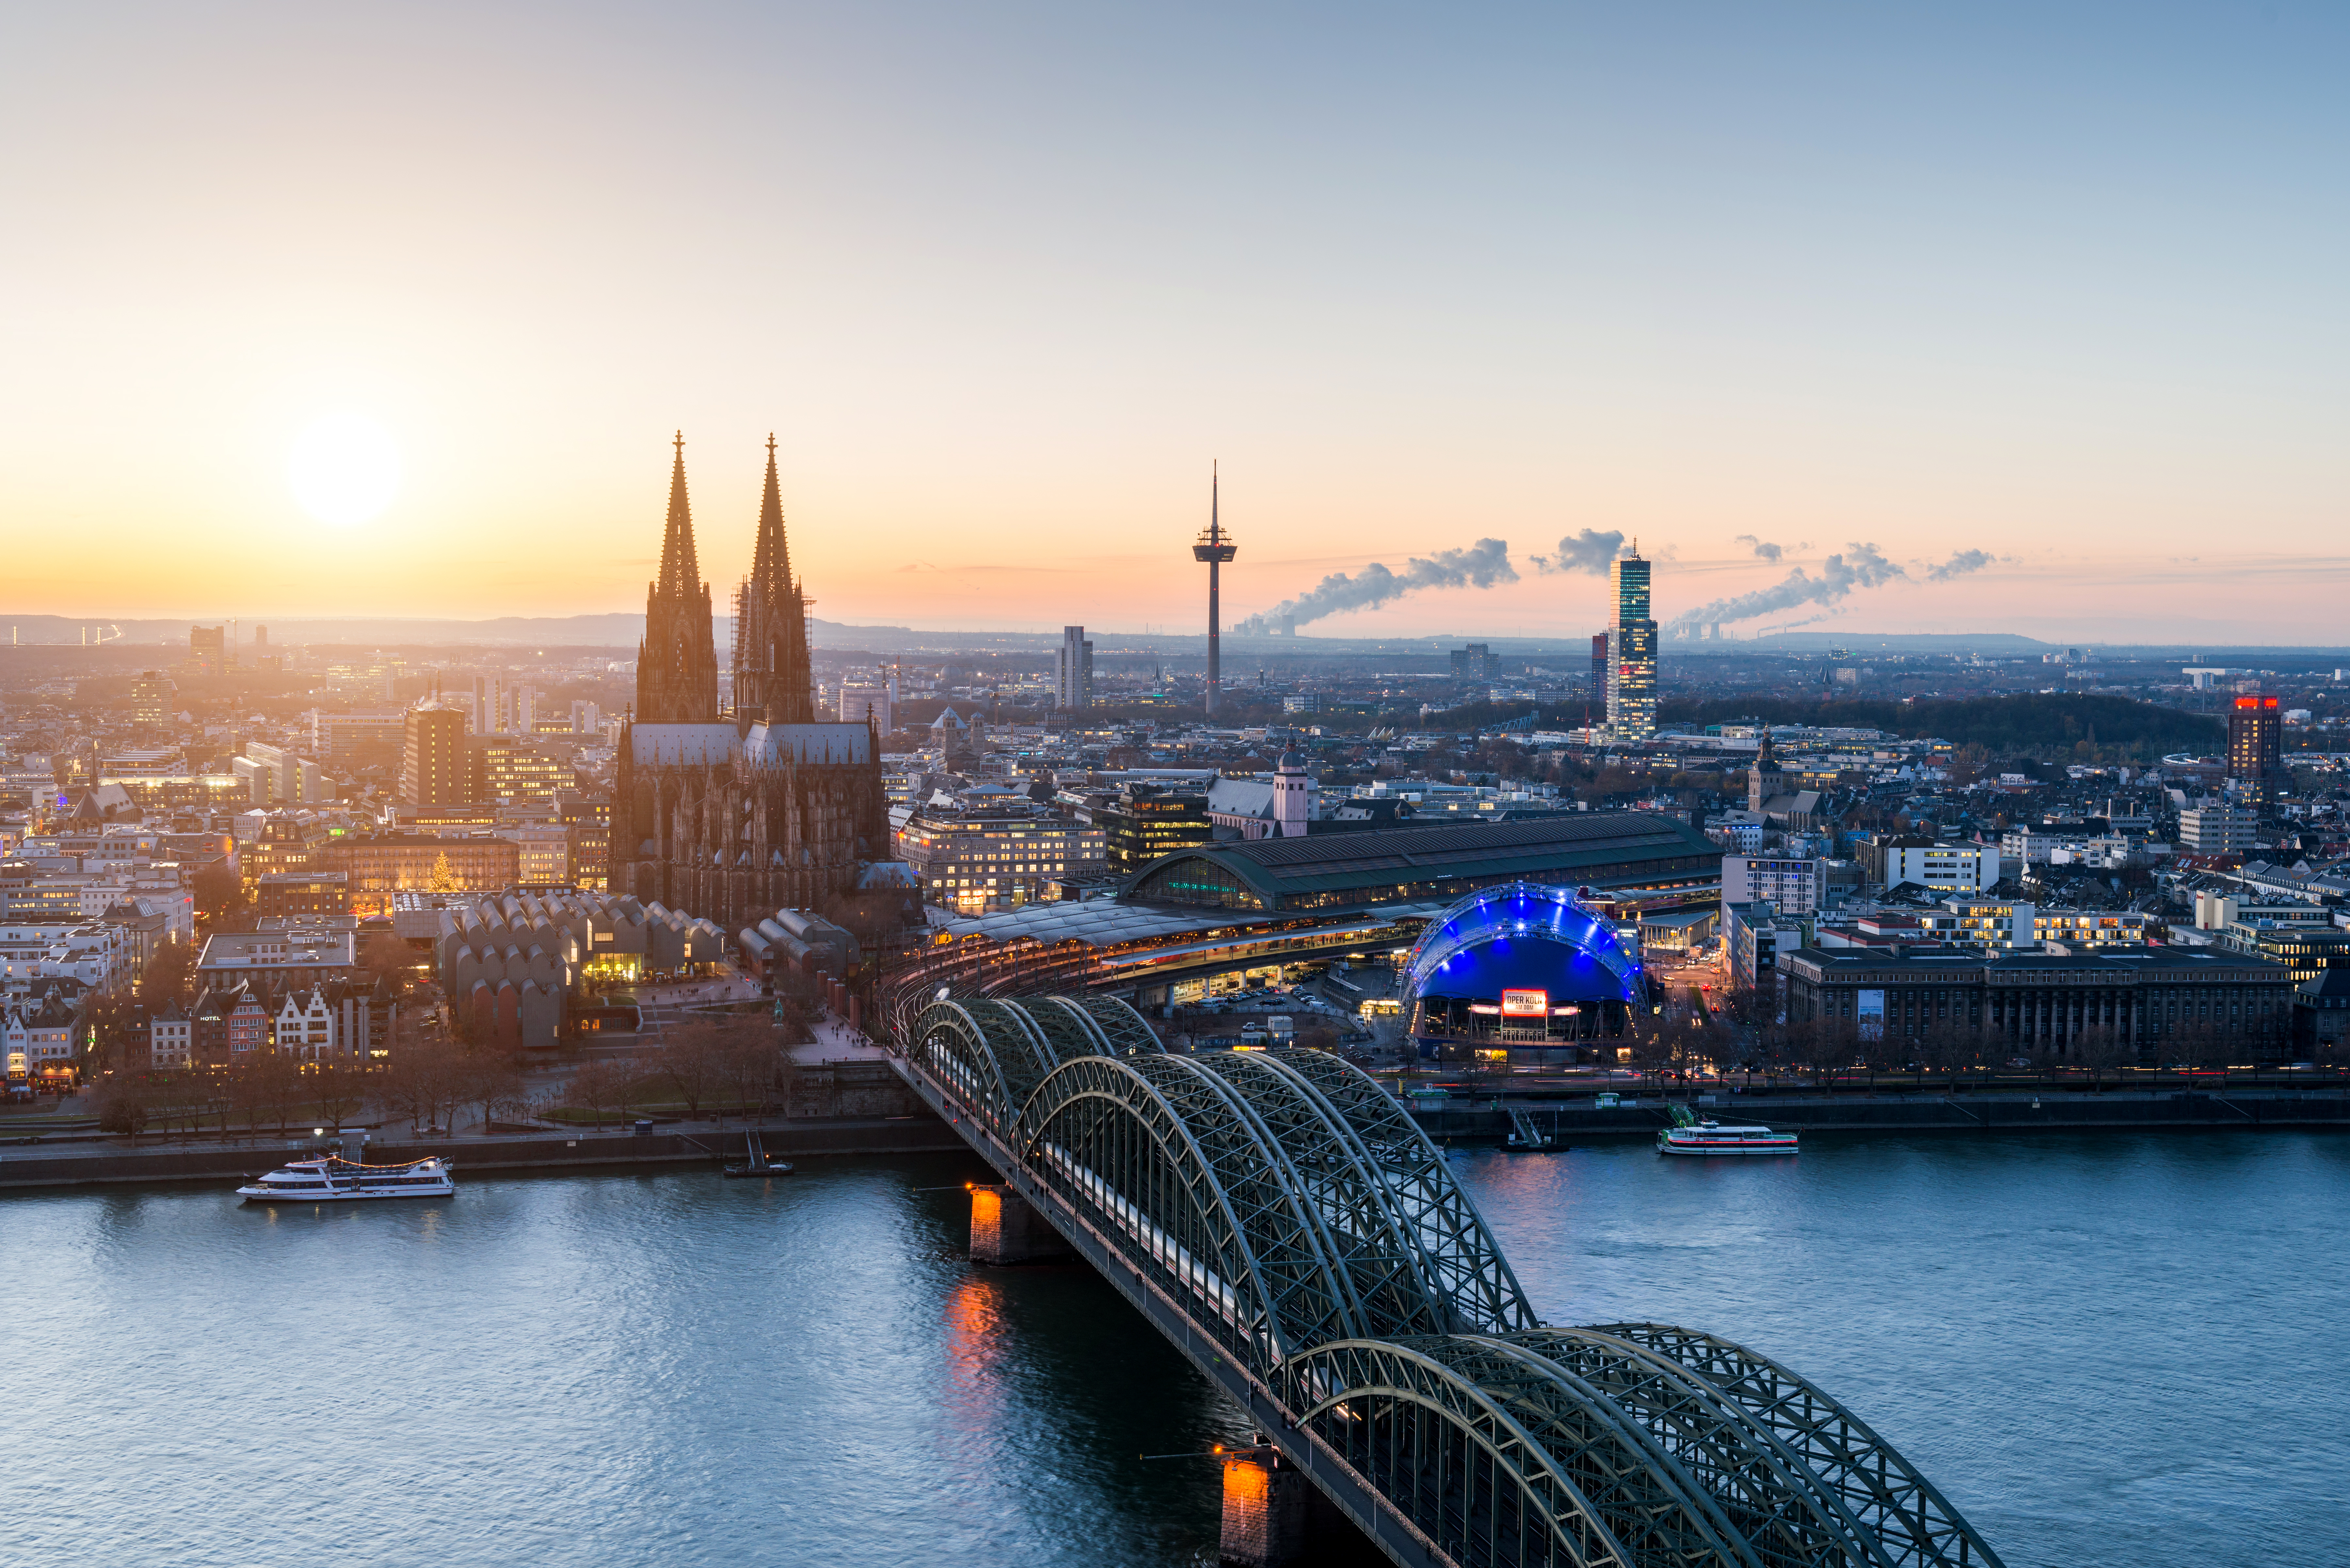 Die Kölner Skyline lädt zum Leben in der Großstadt ein
				